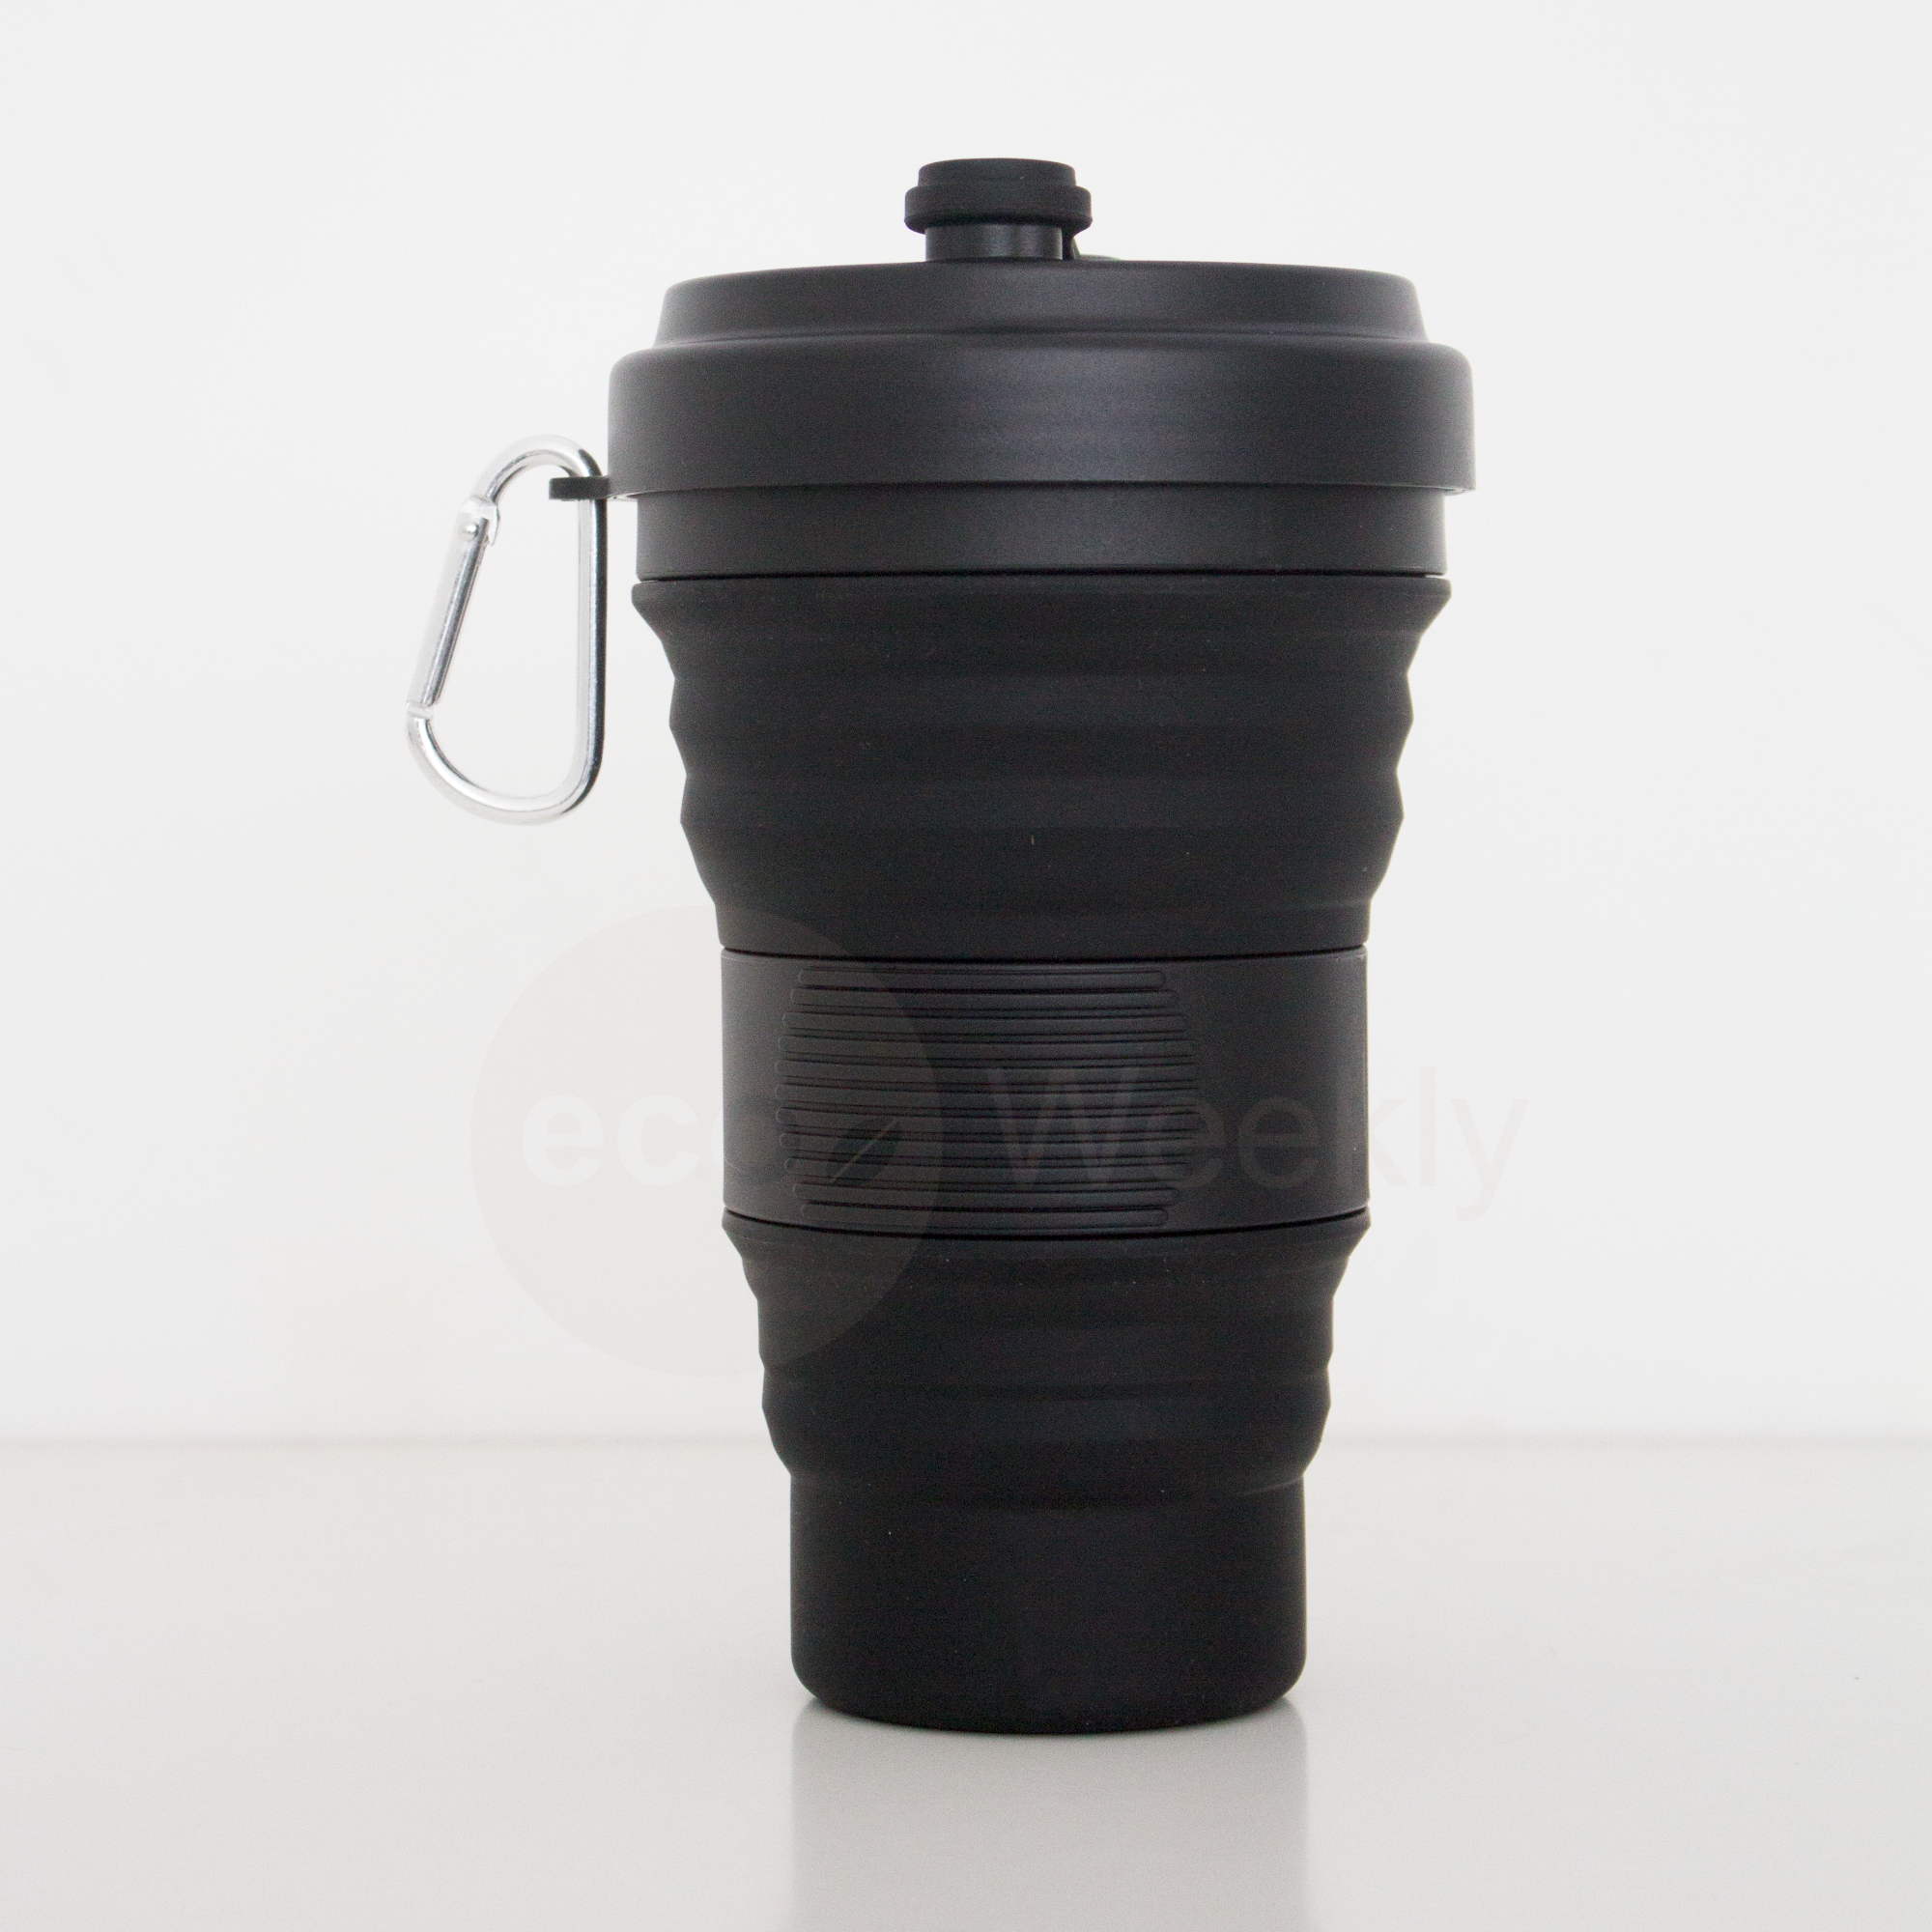 Termo vaso plegable portátil reutilizable – Tecnologia Gipel